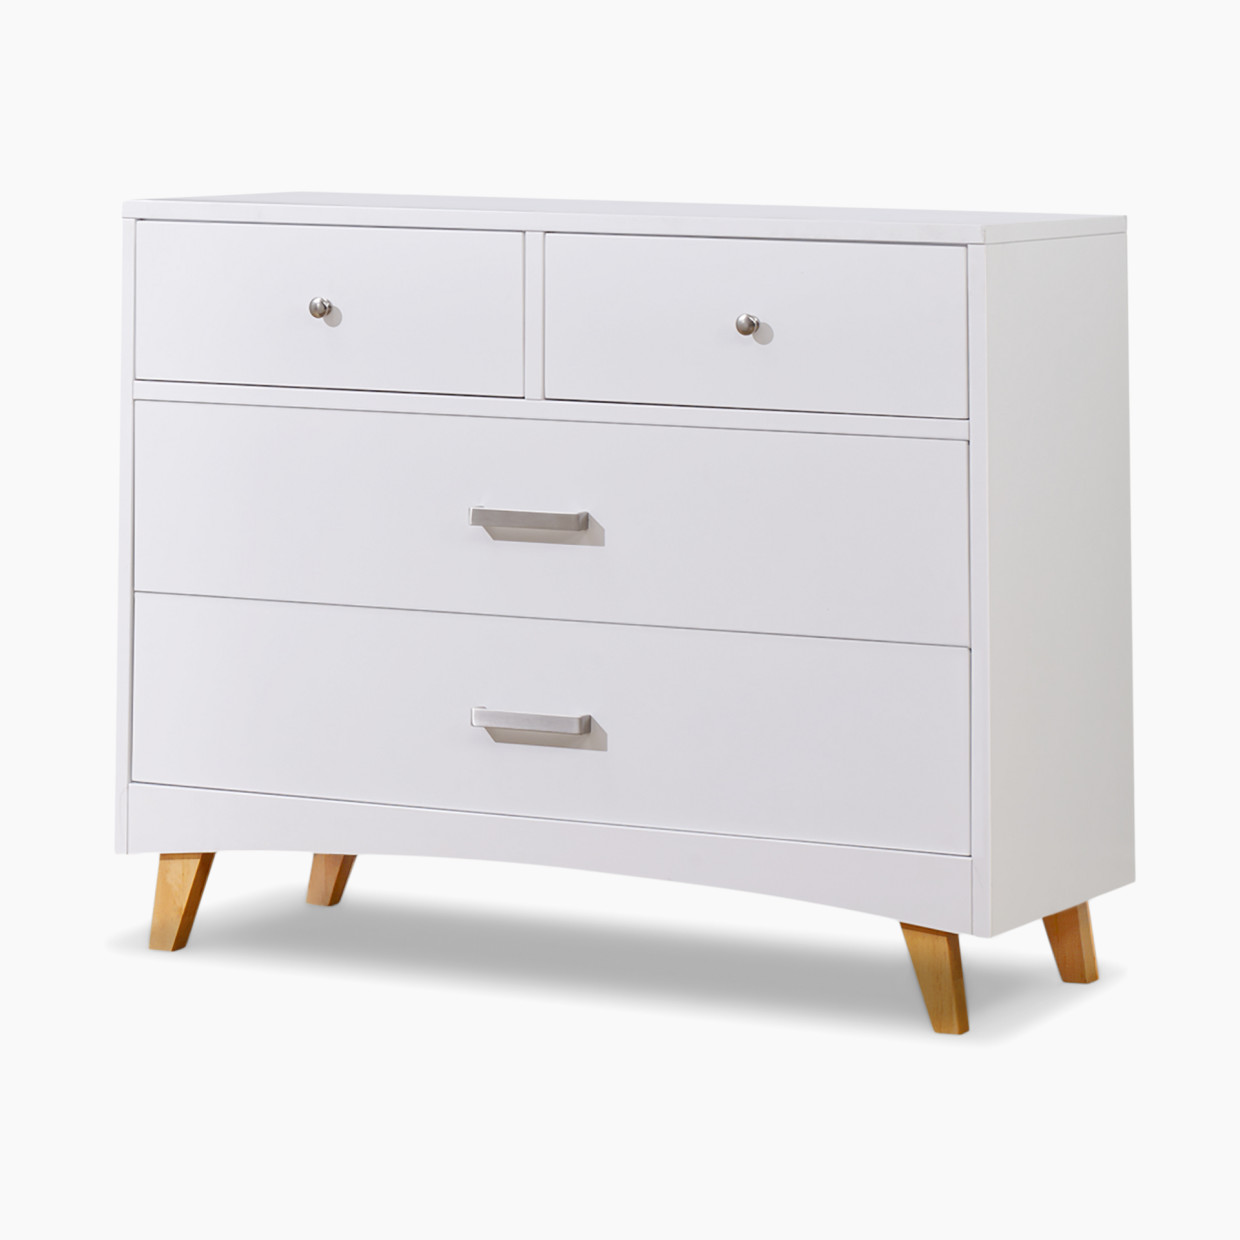 Sorelle Soho 4 Drawer Dresser - White And Natural Wood.